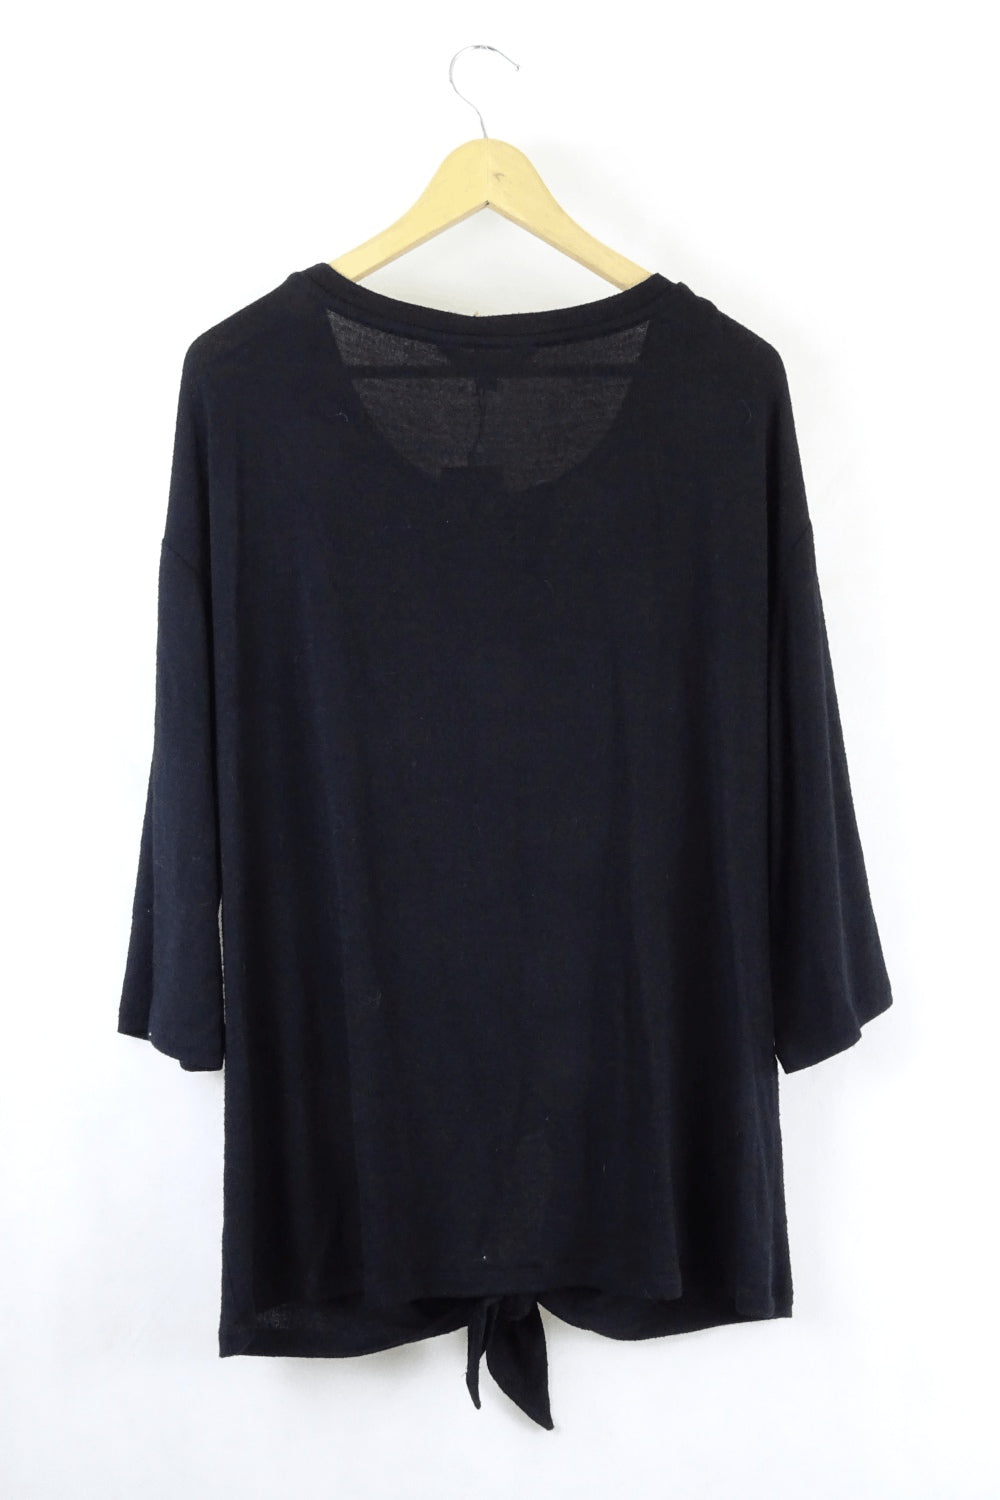 Miladys Black Lace Cardigan 18 - Reluv Clothing Australia